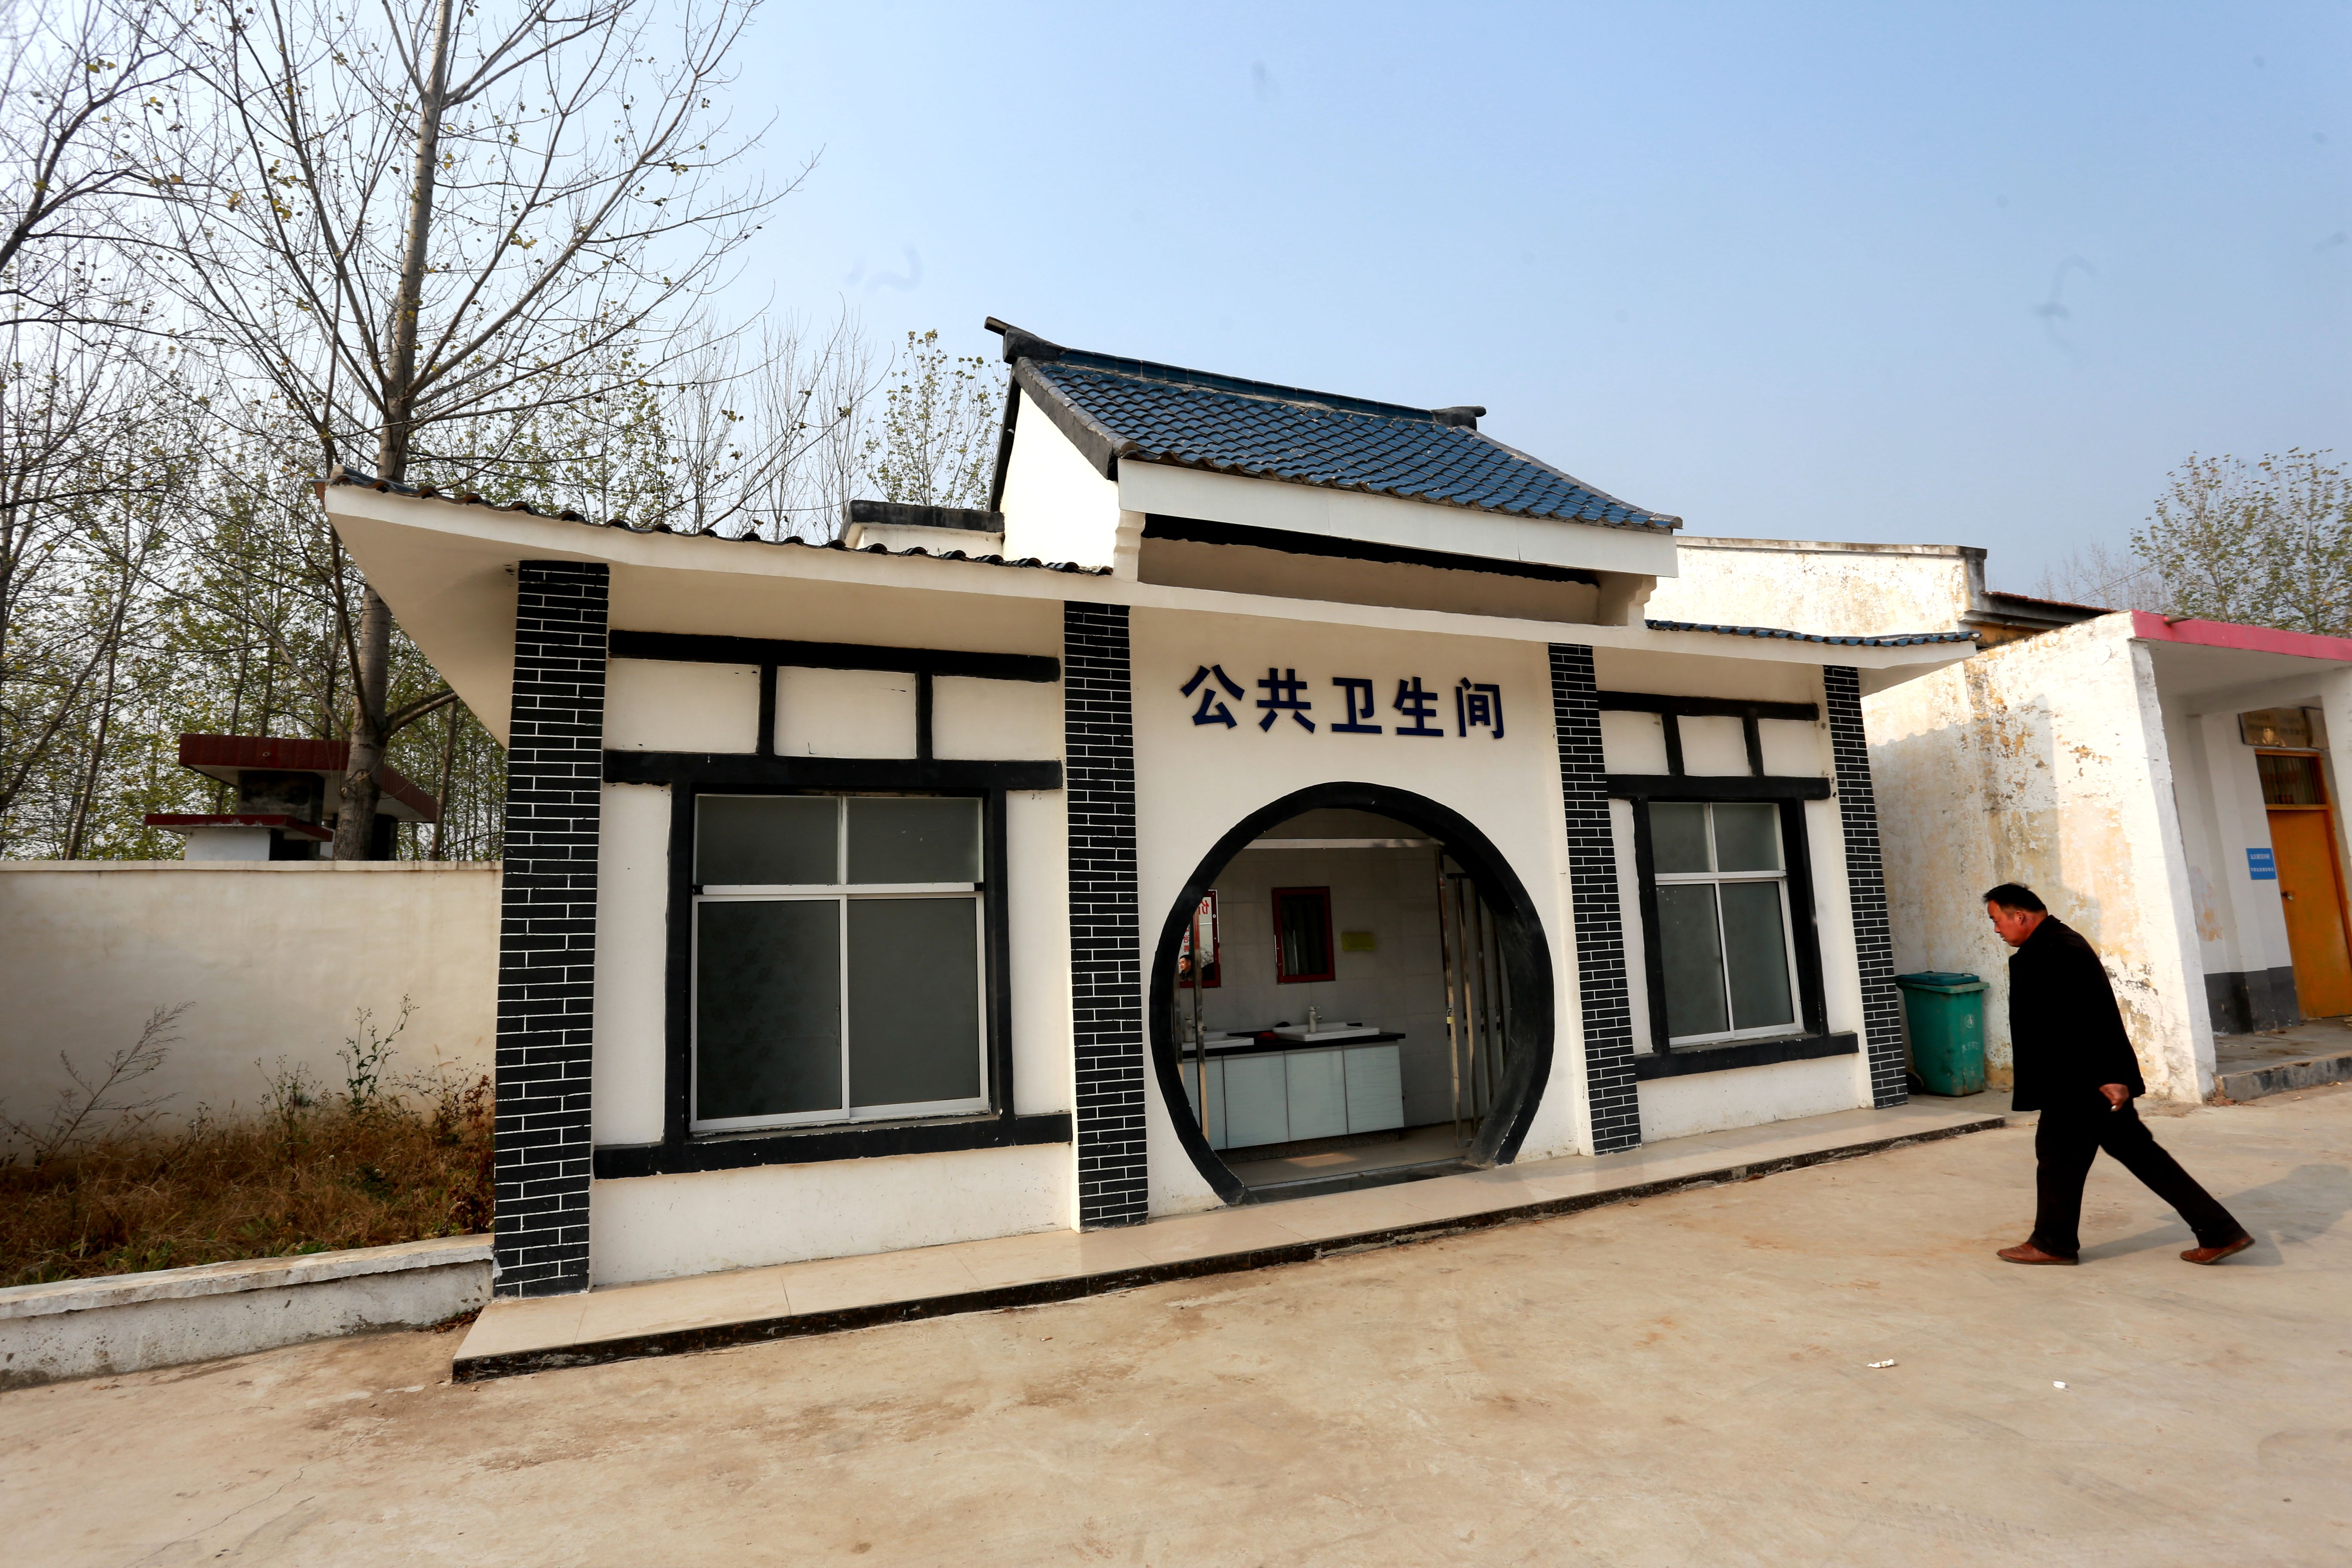 12月4日下午,记者走进太丘镇吴圩村的一处公共卫生间,循环播放的轻